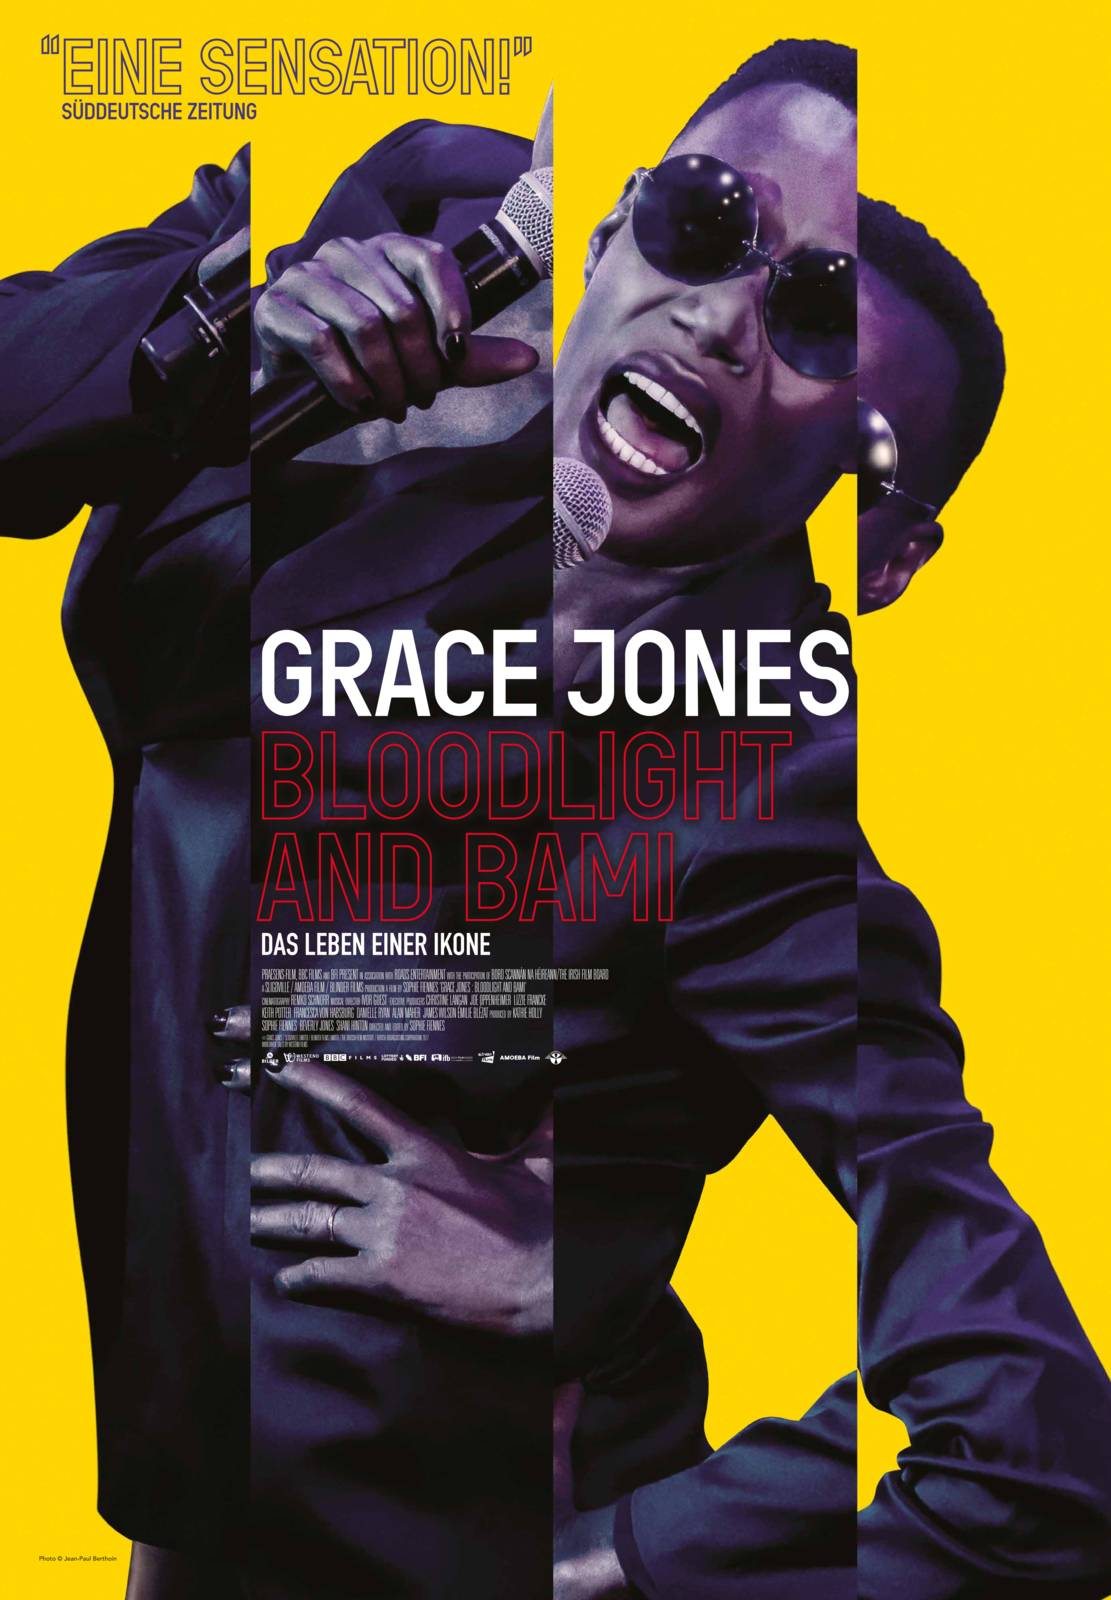 Un documentaire nous plonge dans le quotidien sensationnel de Grace Jones